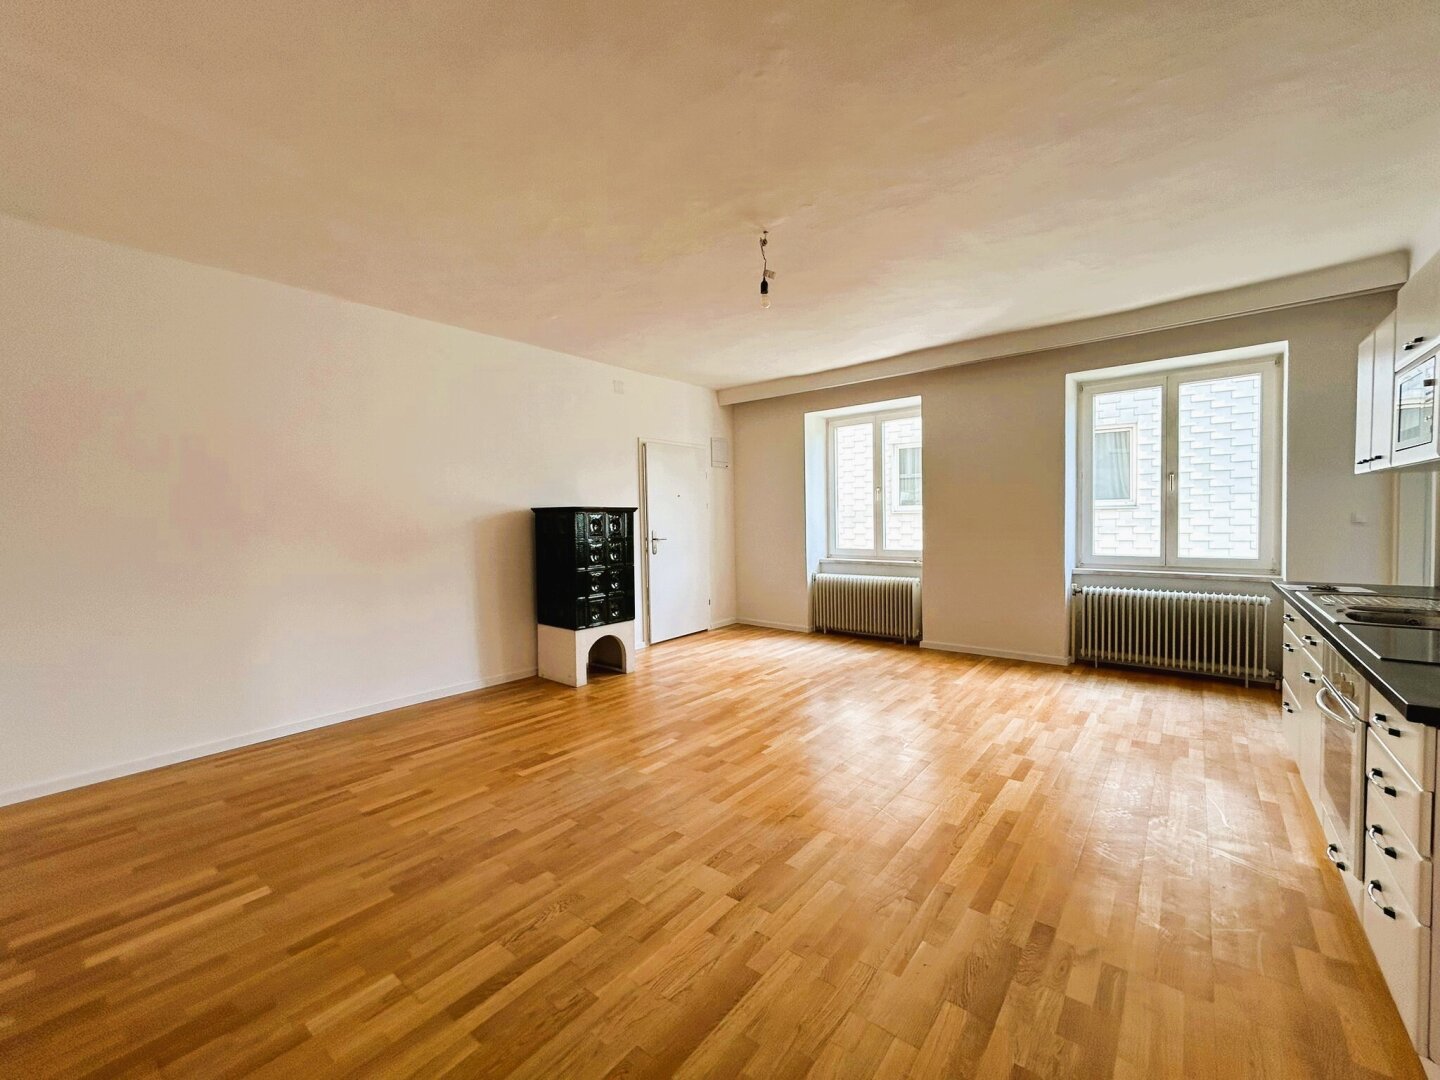 Perfekt für Paare, als Zweitwohnsitz oder als Anlegerwohnung – Wohnung mit 70 m² (Top 2) in Wiesmath, 2811 Wiesmath, Wohnung